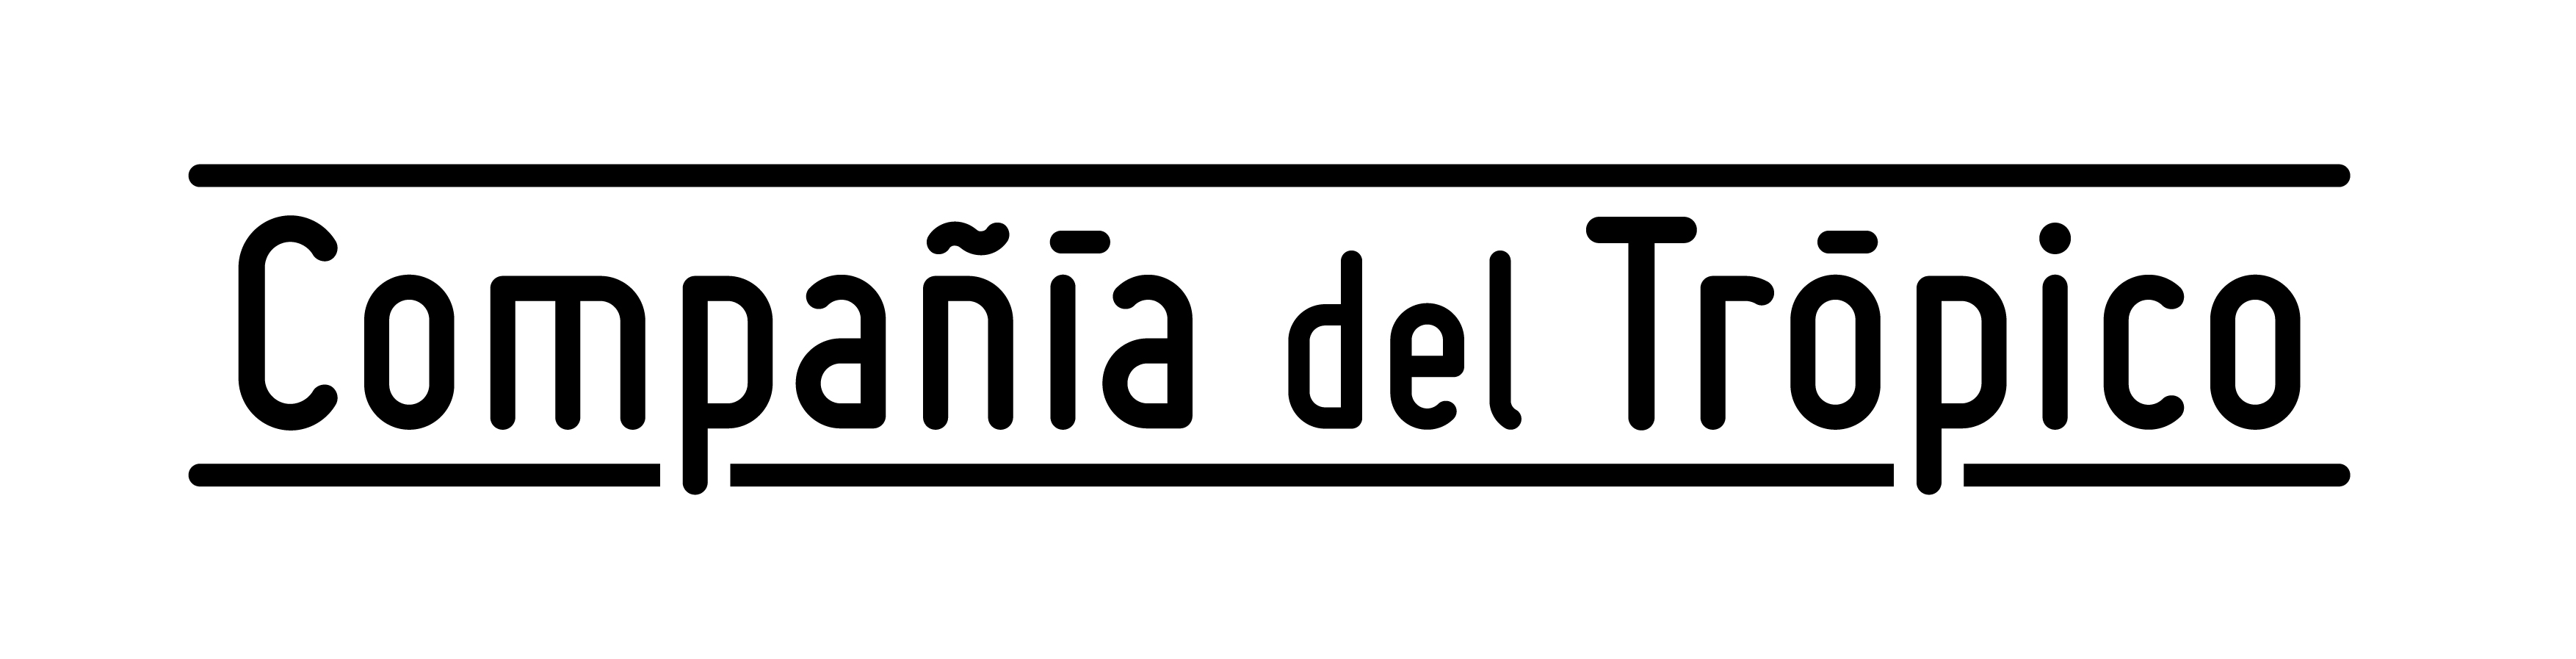 20171221_CompañíadelTrópico_logo